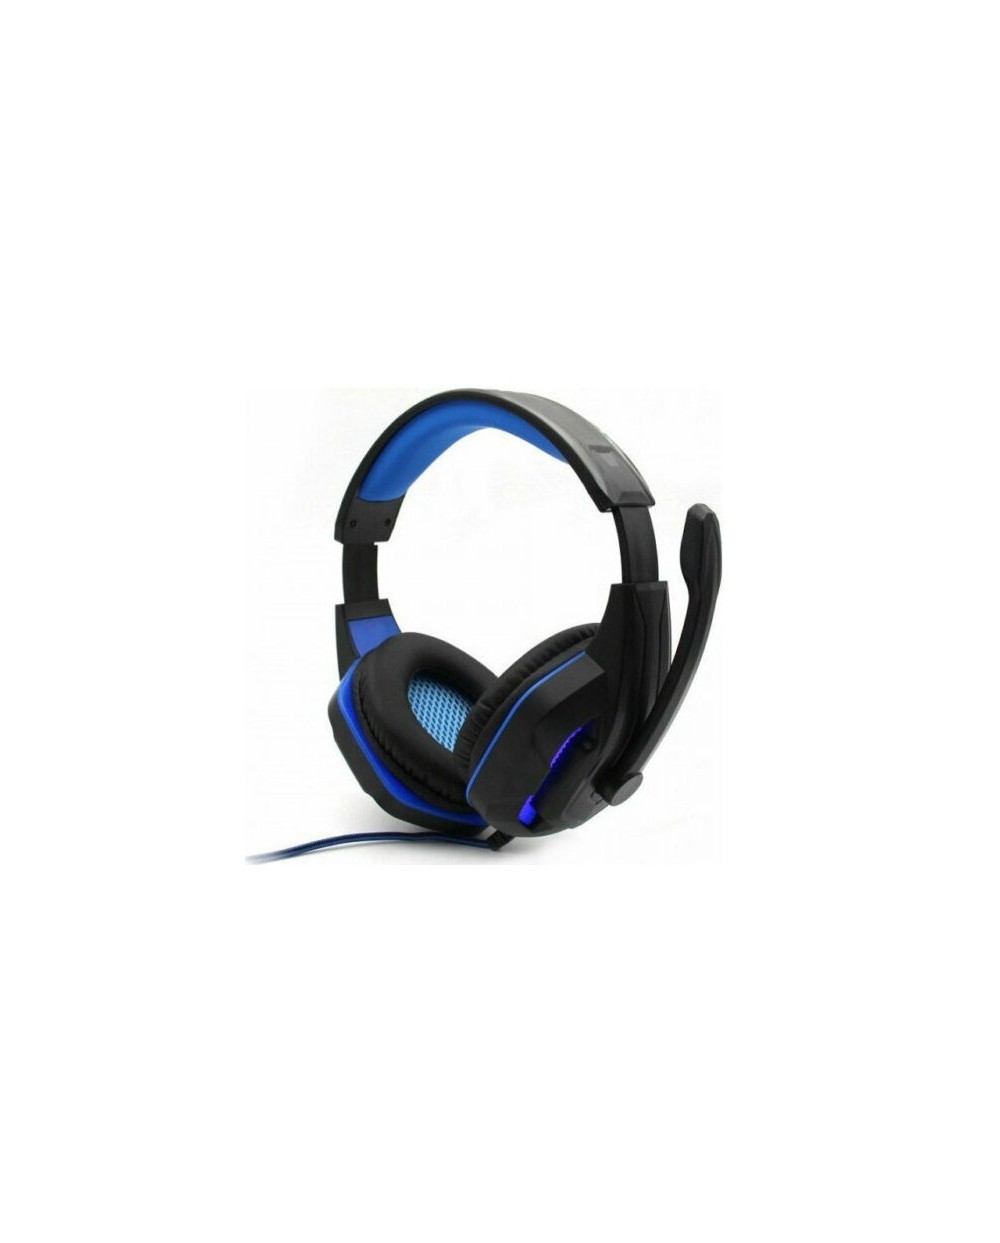 Στερεοφωνικά Ακουστικά Gaming με Ρυθμιζόμενο Μικρόφωνο KOMC PC Series M203 Μπλε